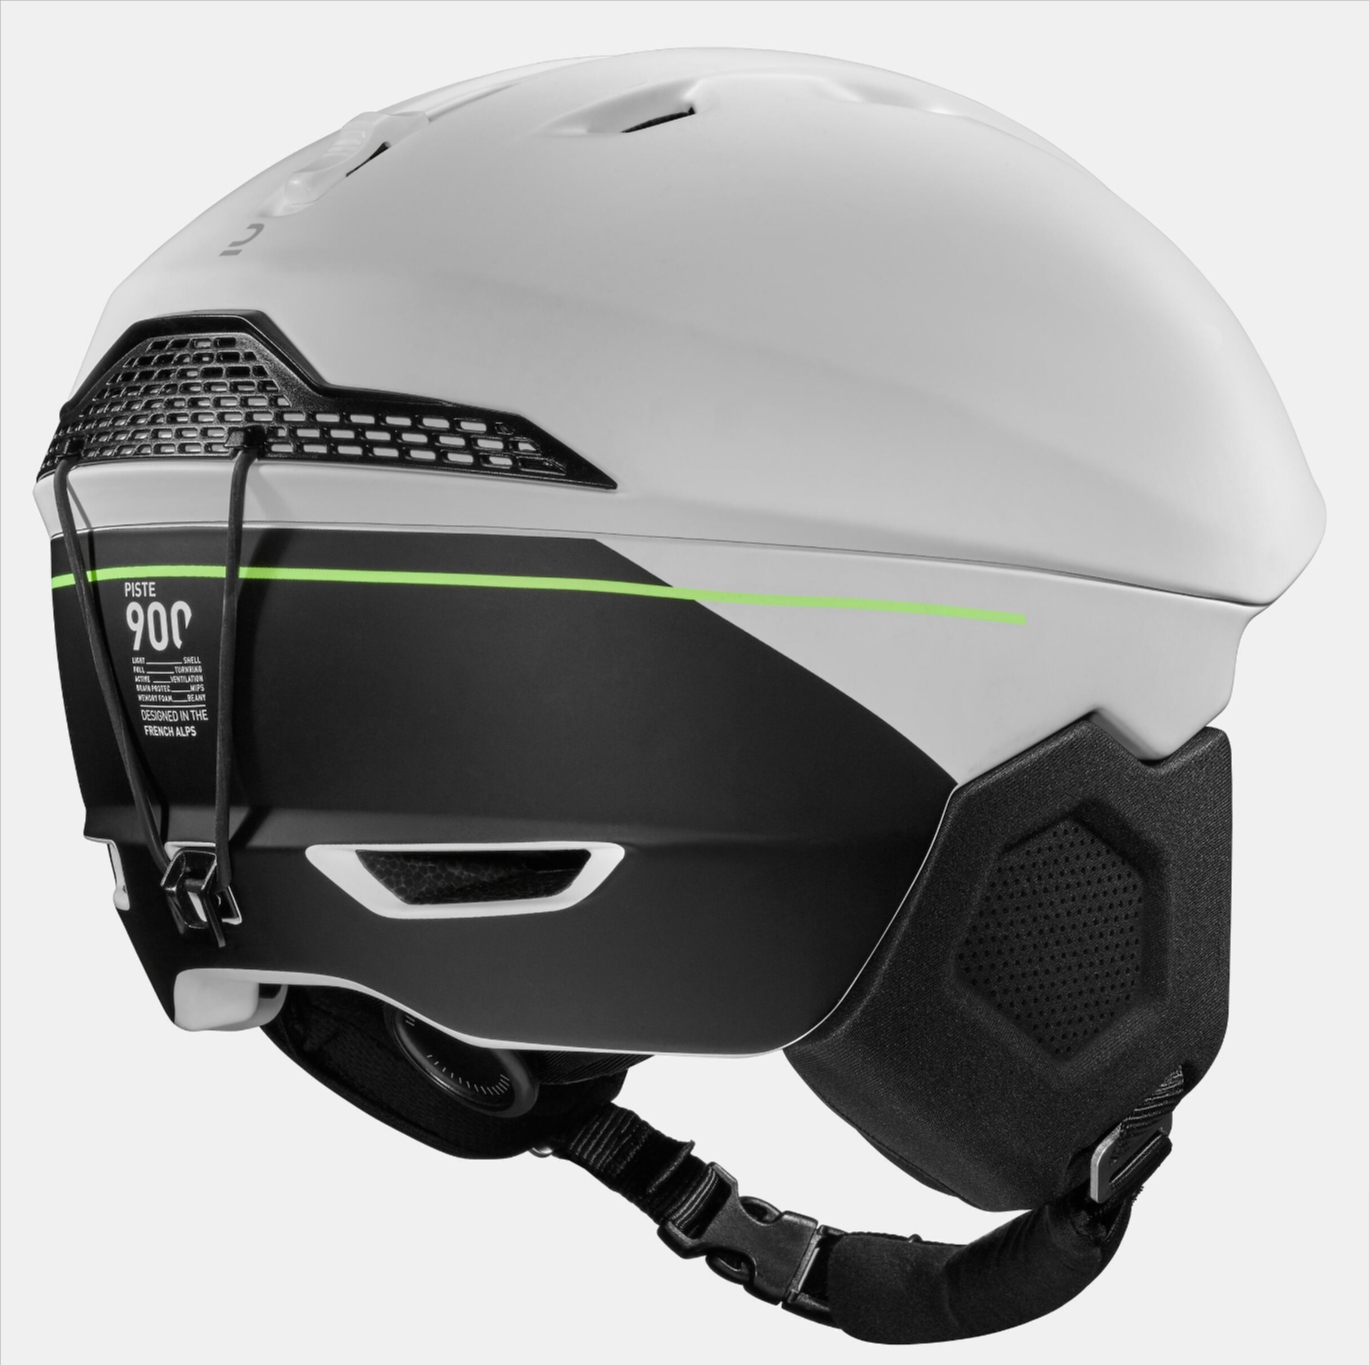 decathlon-wedze-pst-900-mips-ski-helmet-review